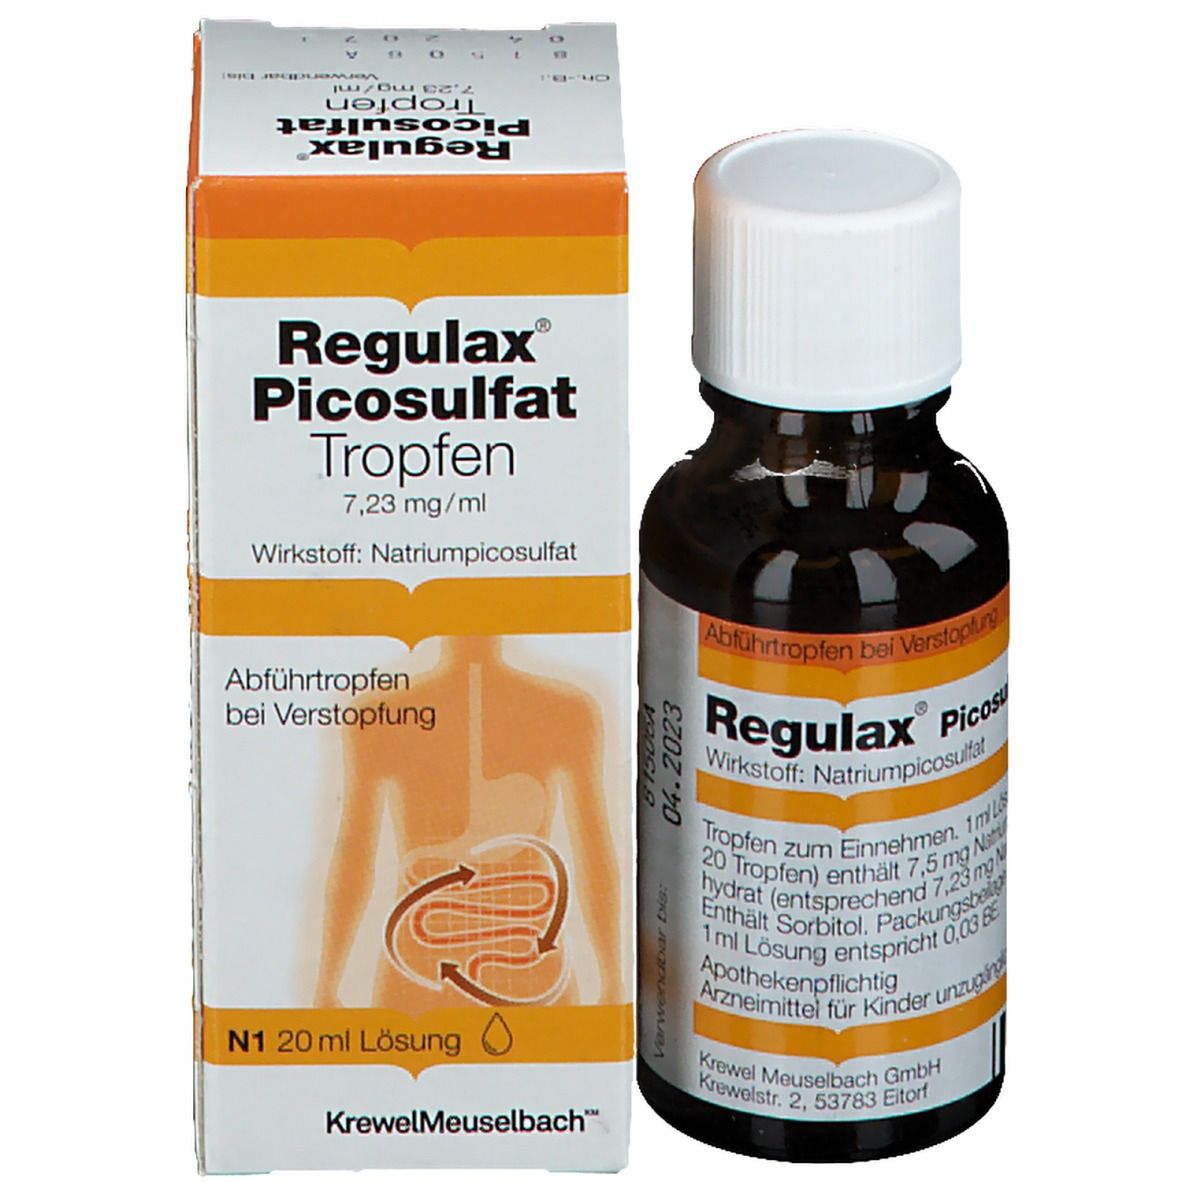 Regulax® Picosulfat Tropfen